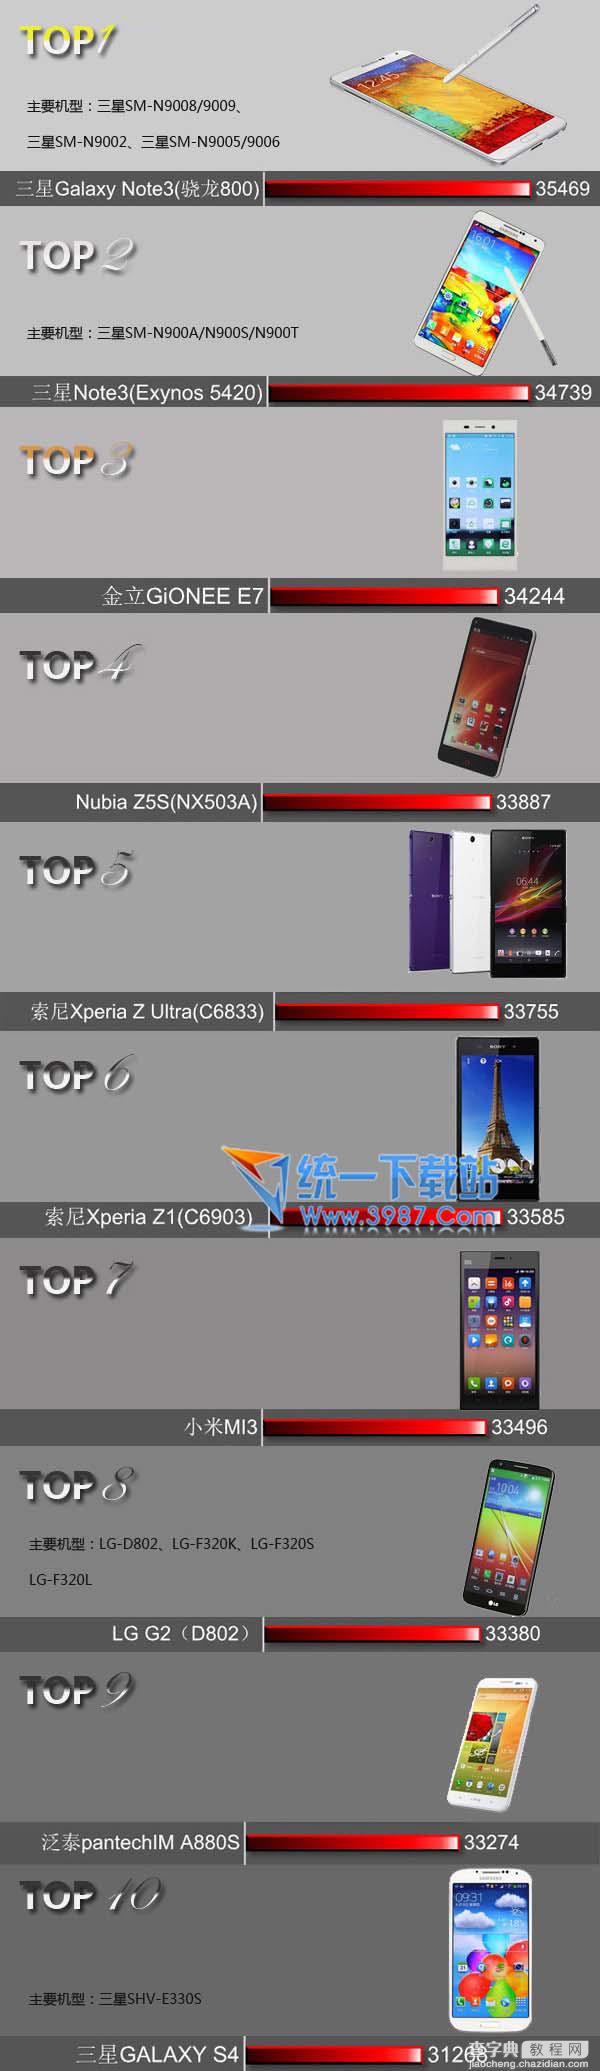 2014手机跑分排行榜 最新安卓手机安兔兔跑分排行榜前十名1